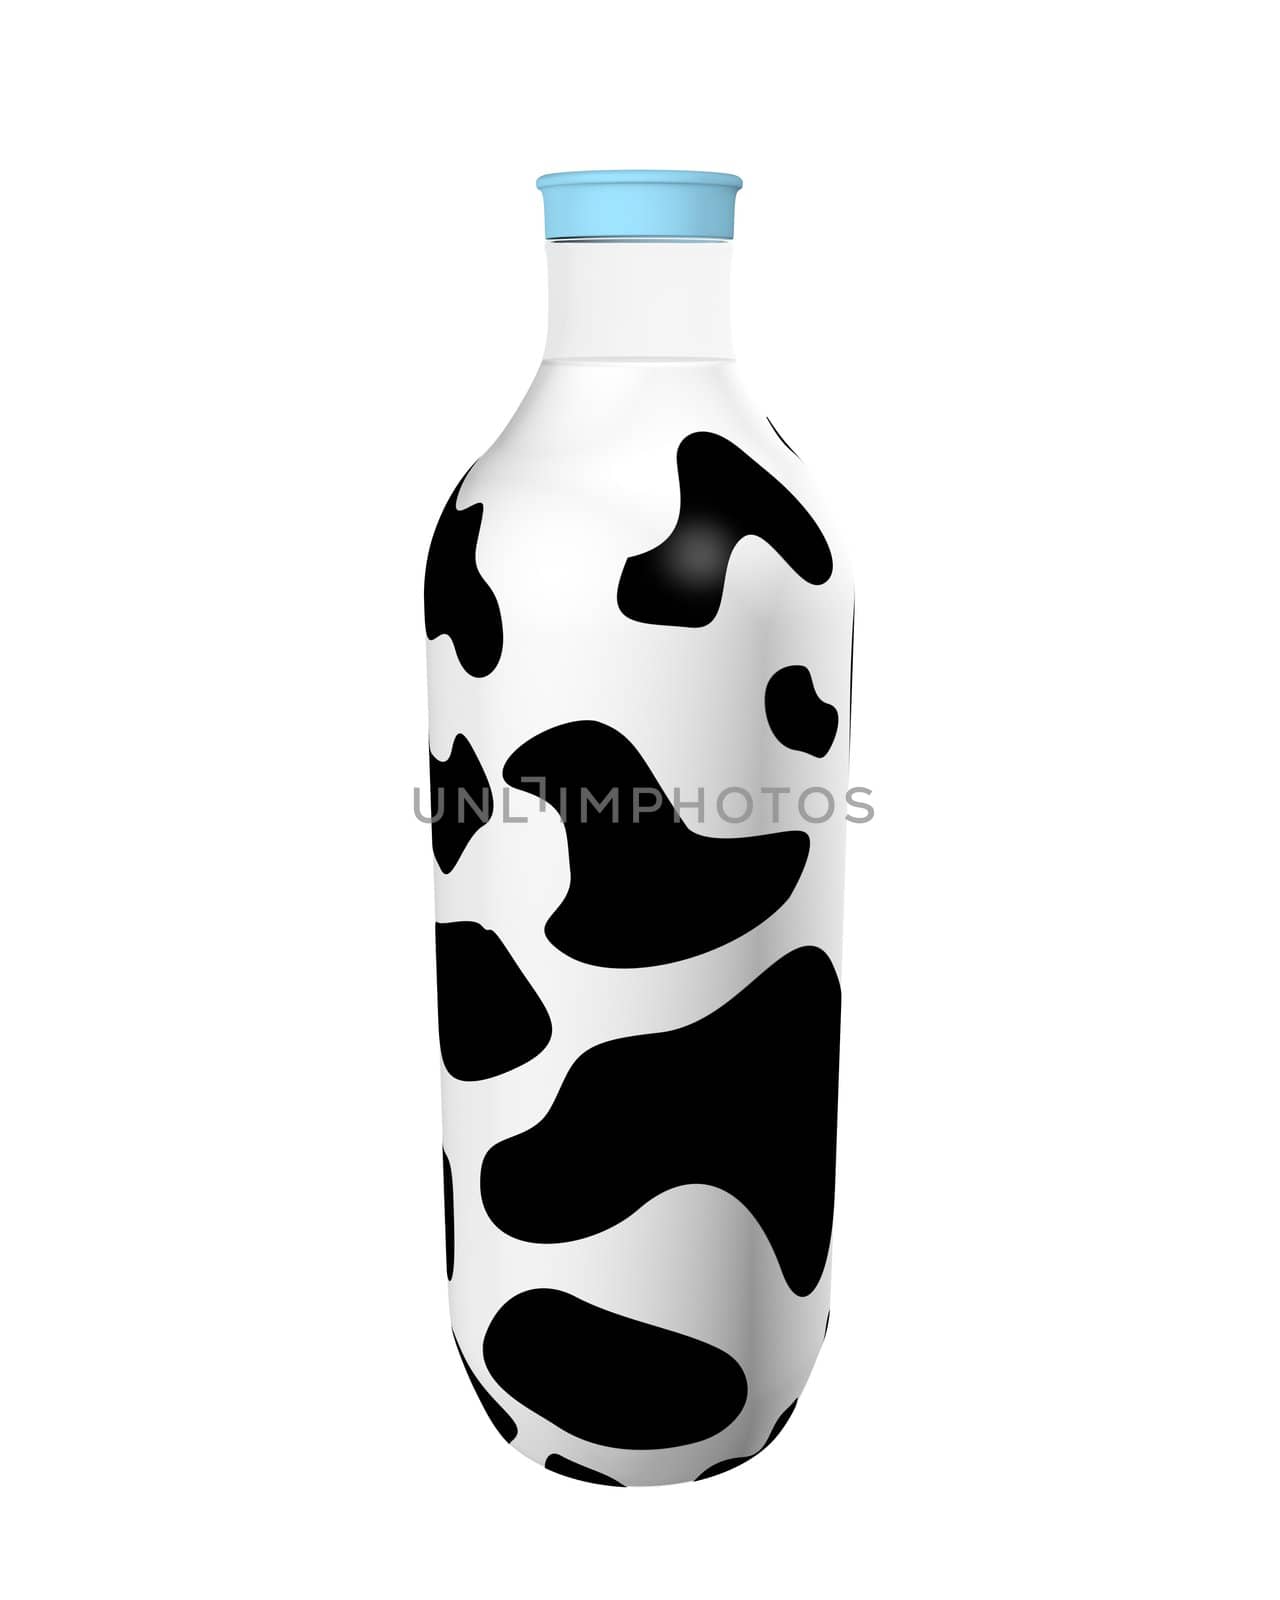 Milk bottle with black spots by midani